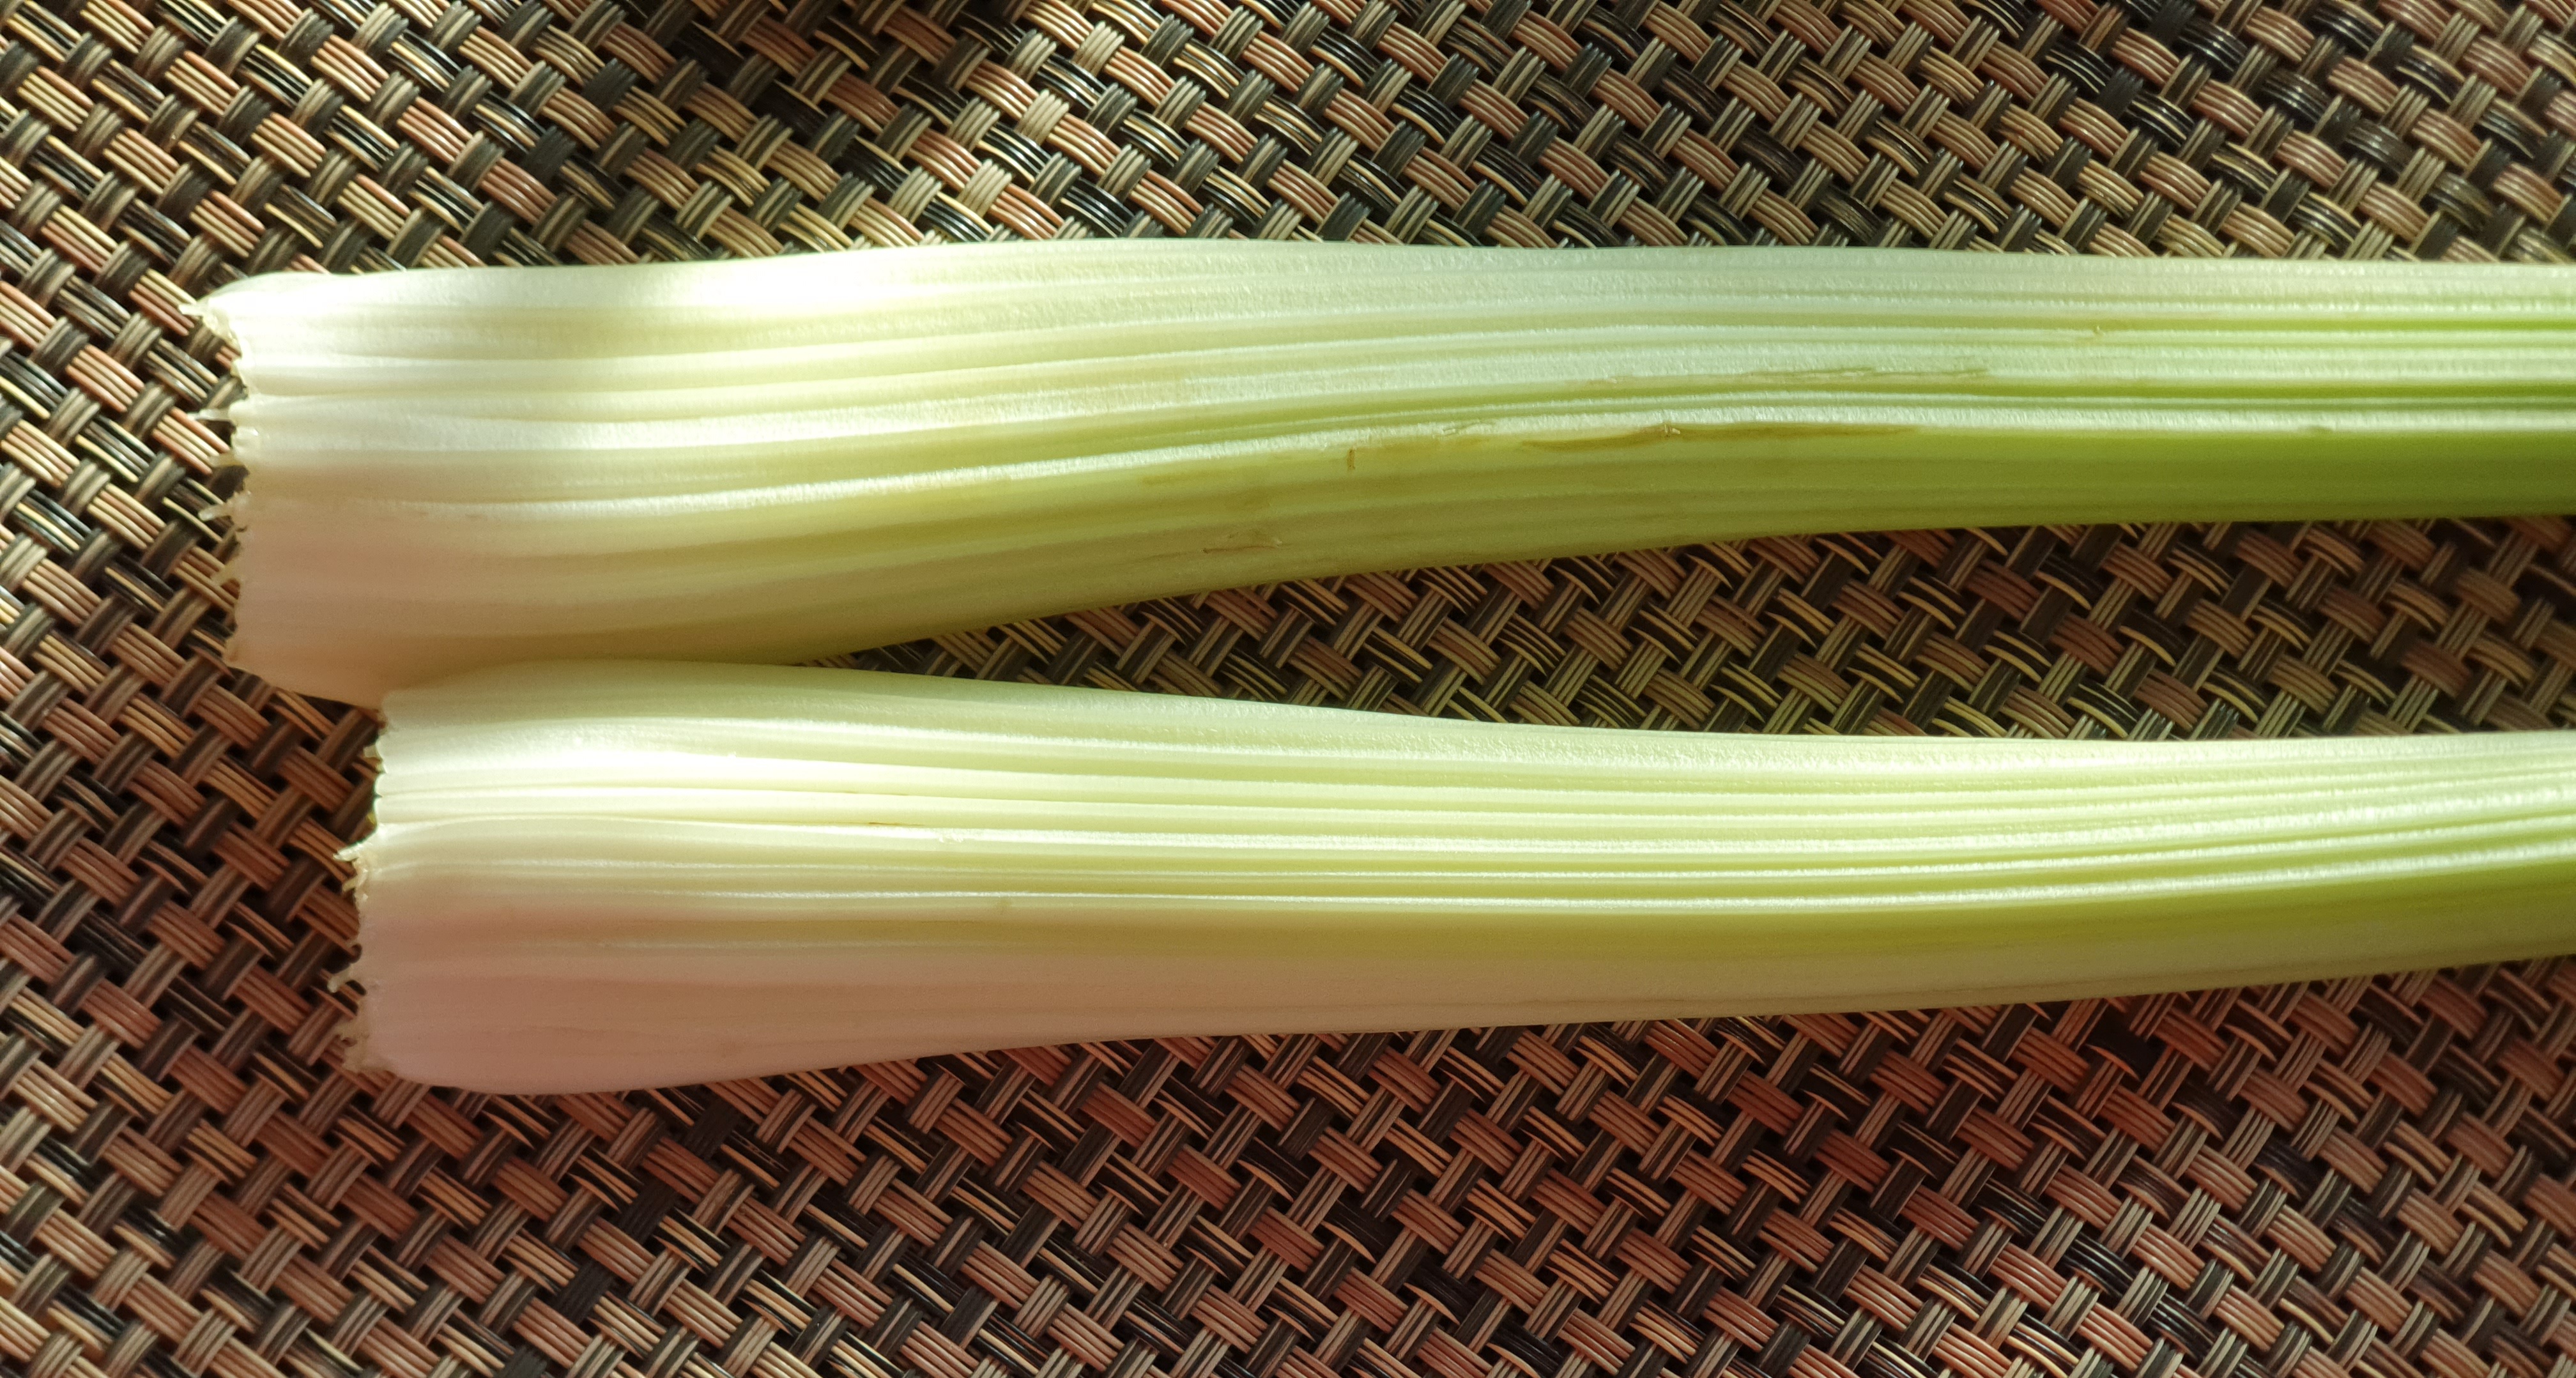 우리 몸에 좋은 셀러리(celery) 줄기